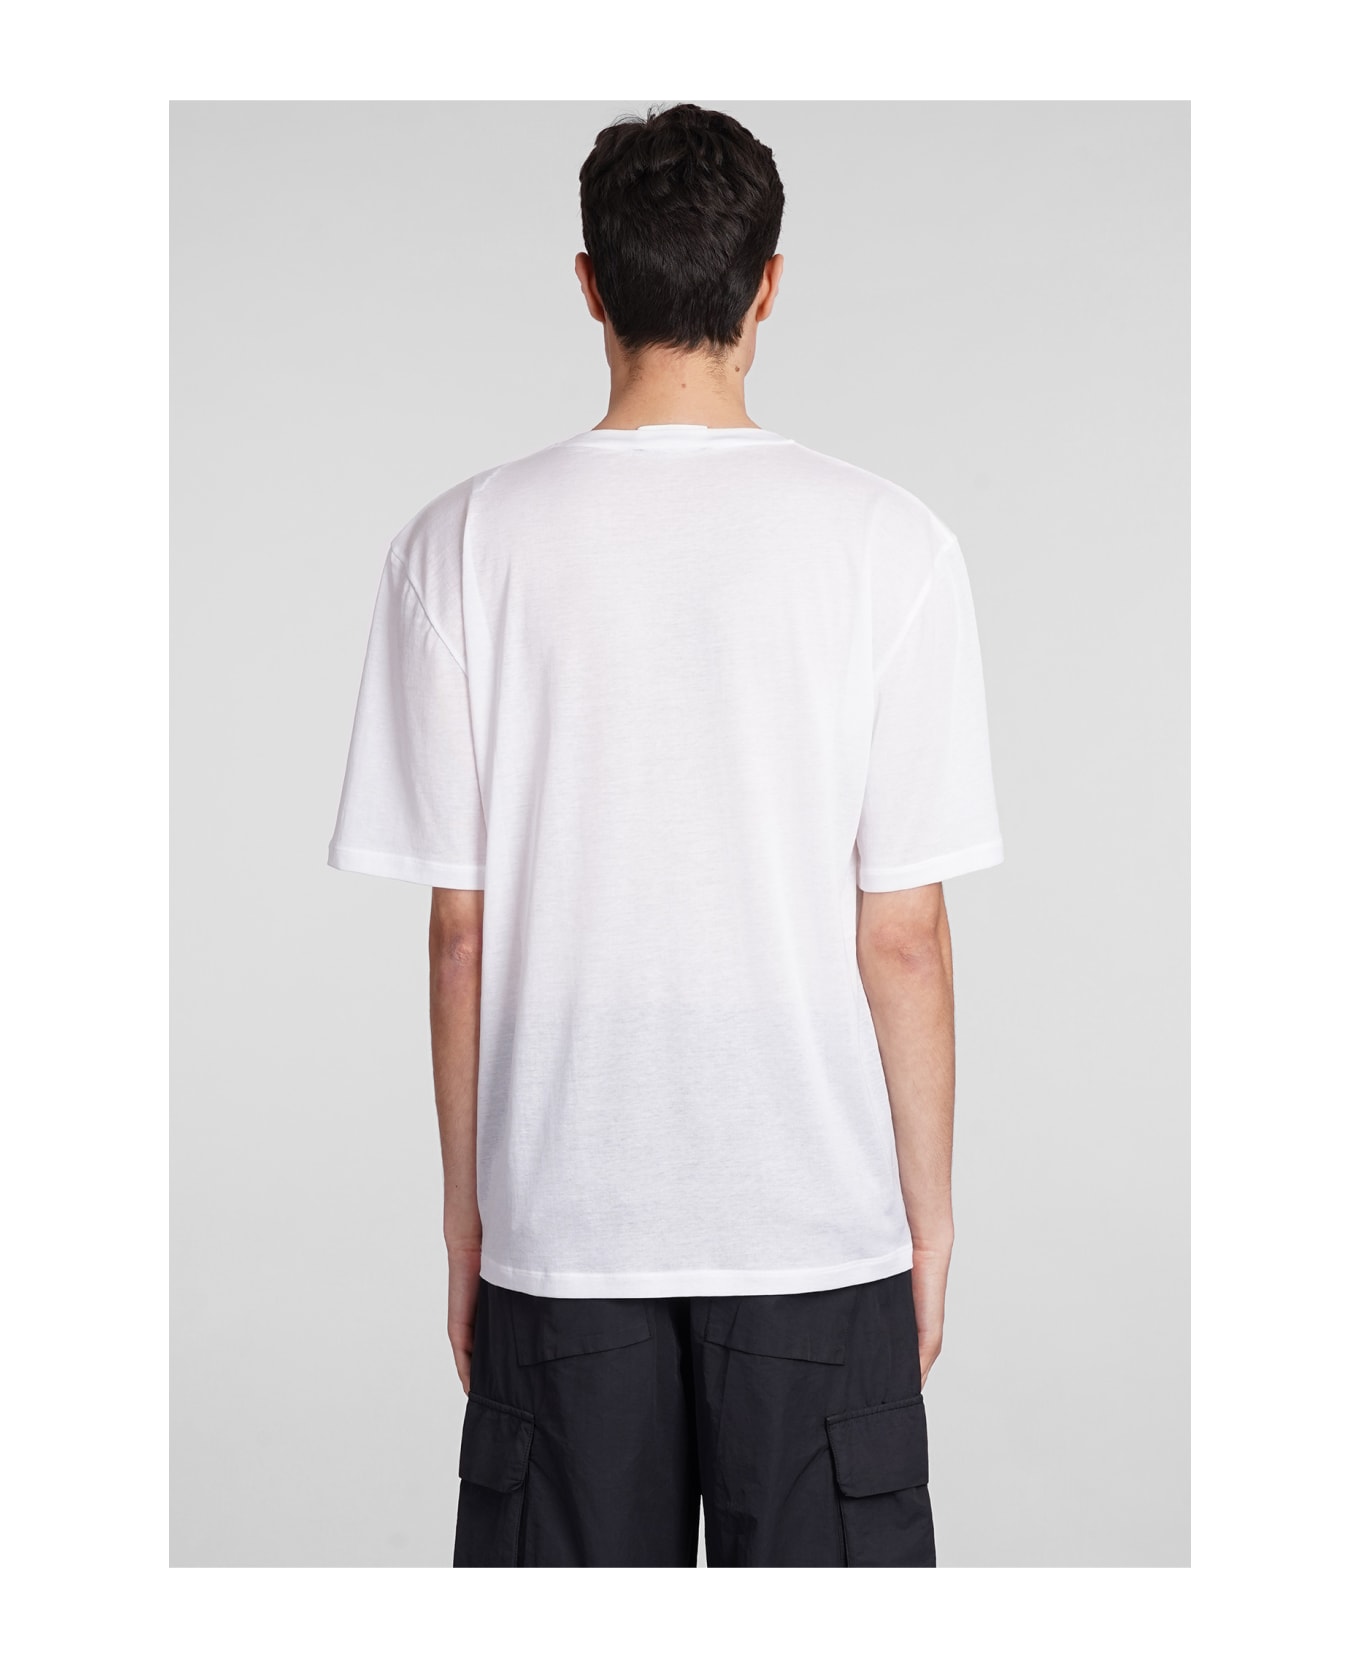 Laneus Crewneck Man T-shirt In White Cotton - white